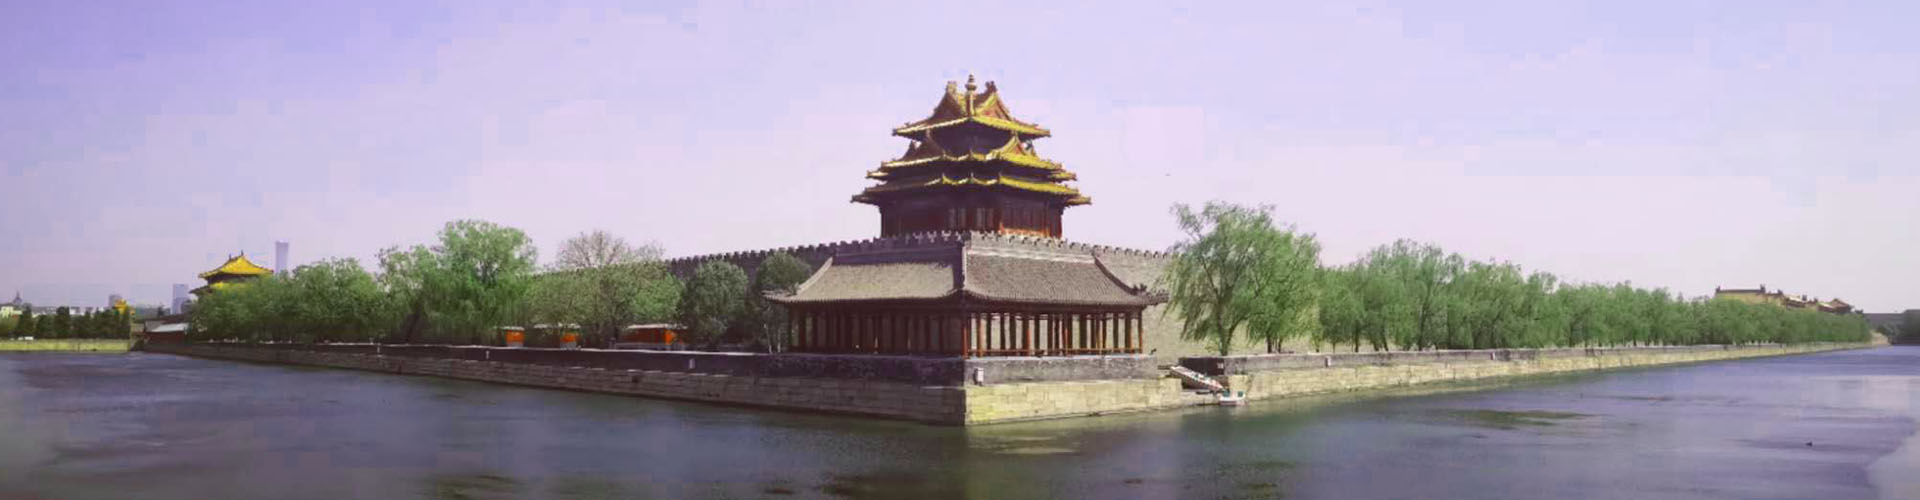 palacio imperial